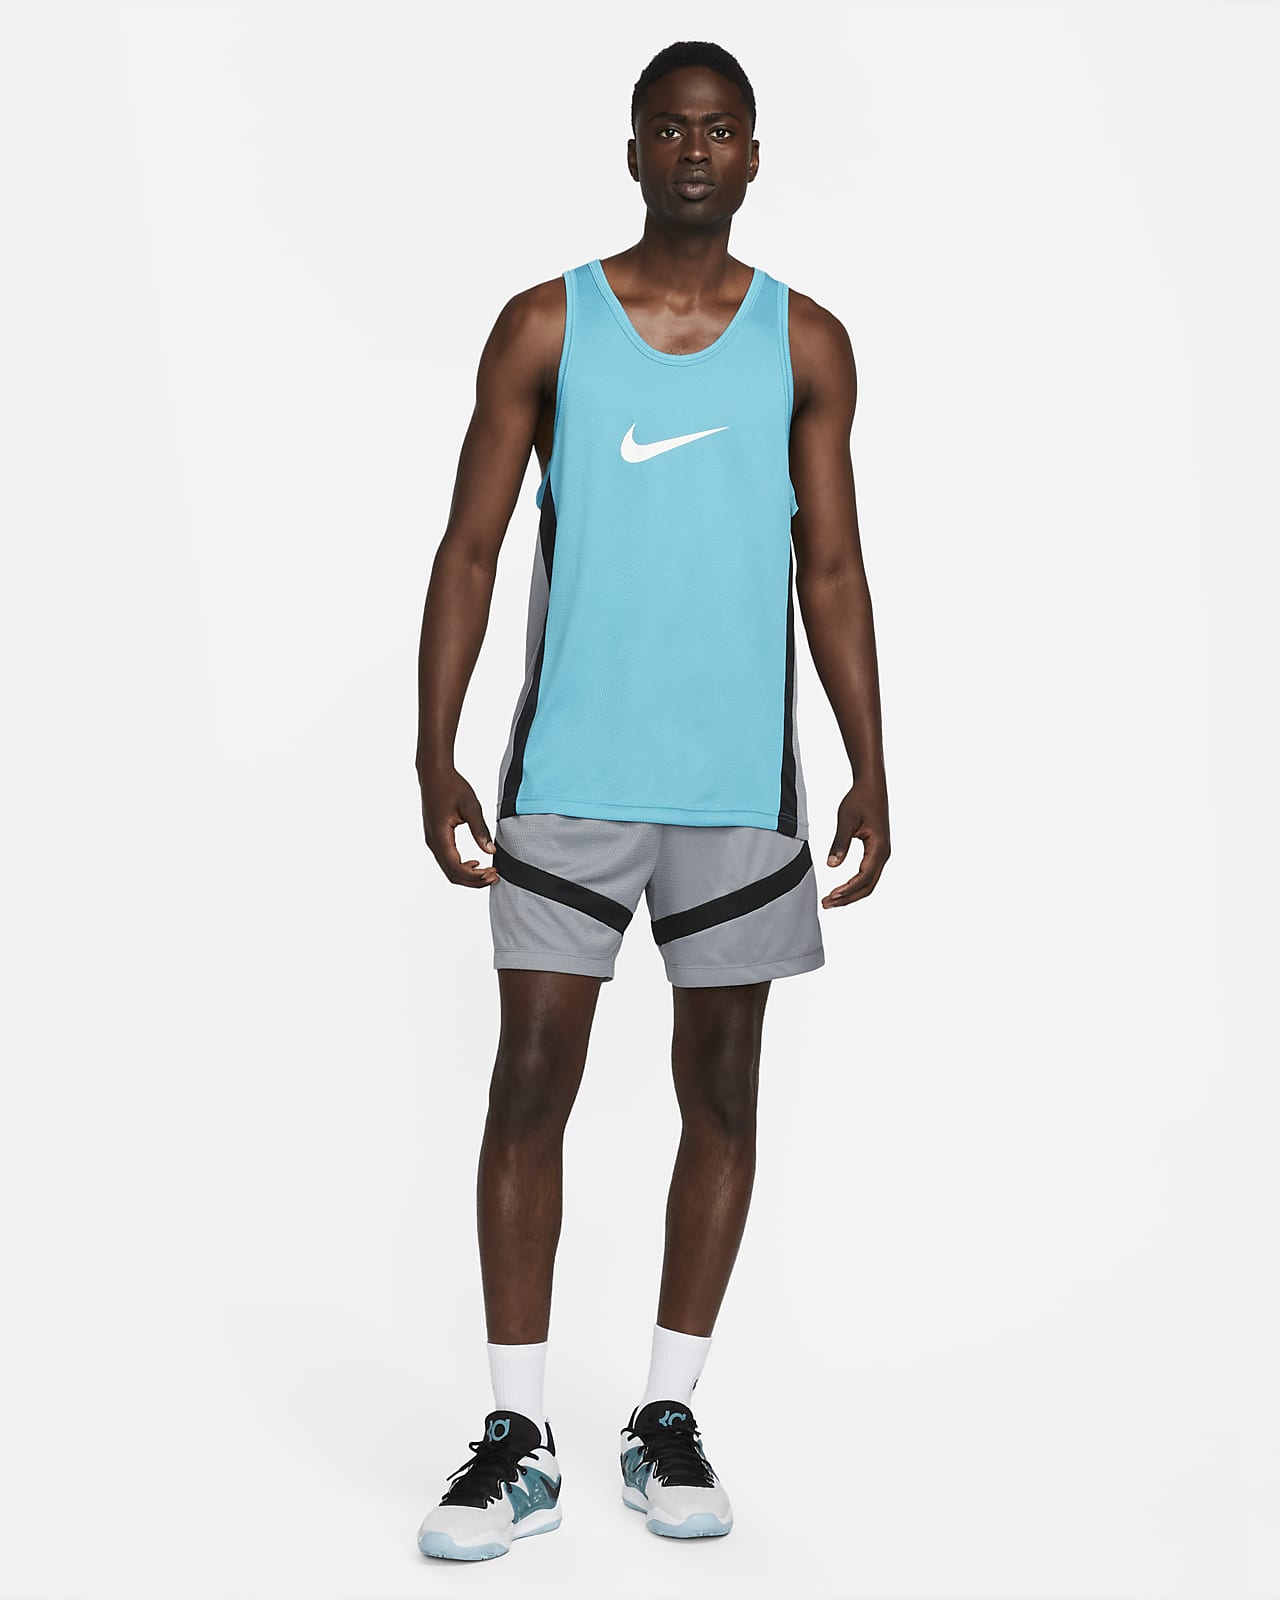 Nike Icon Men's Dri-FIT Basketball Jersey.